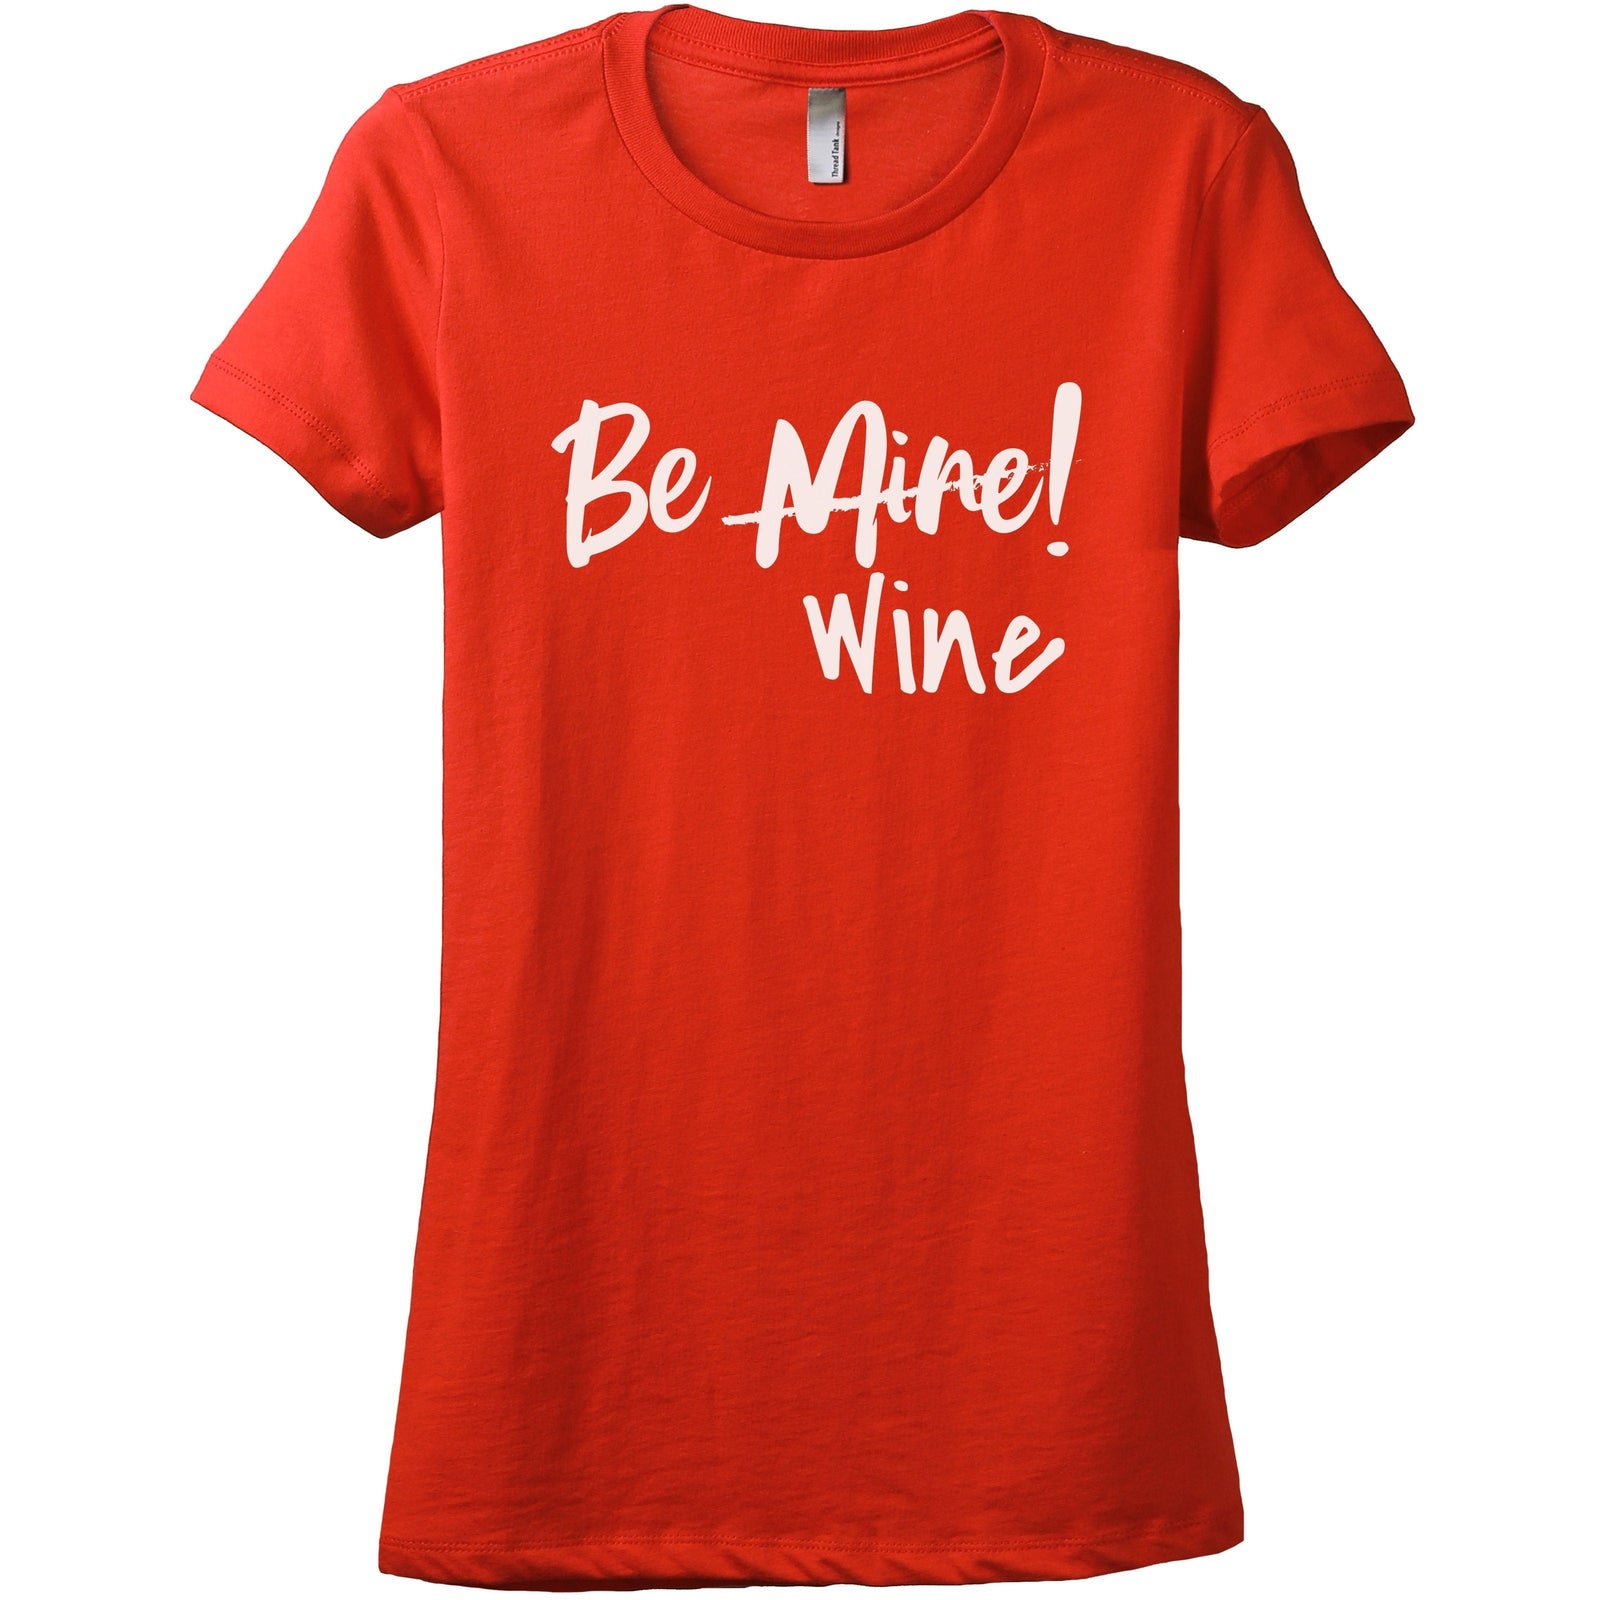 Be Wine